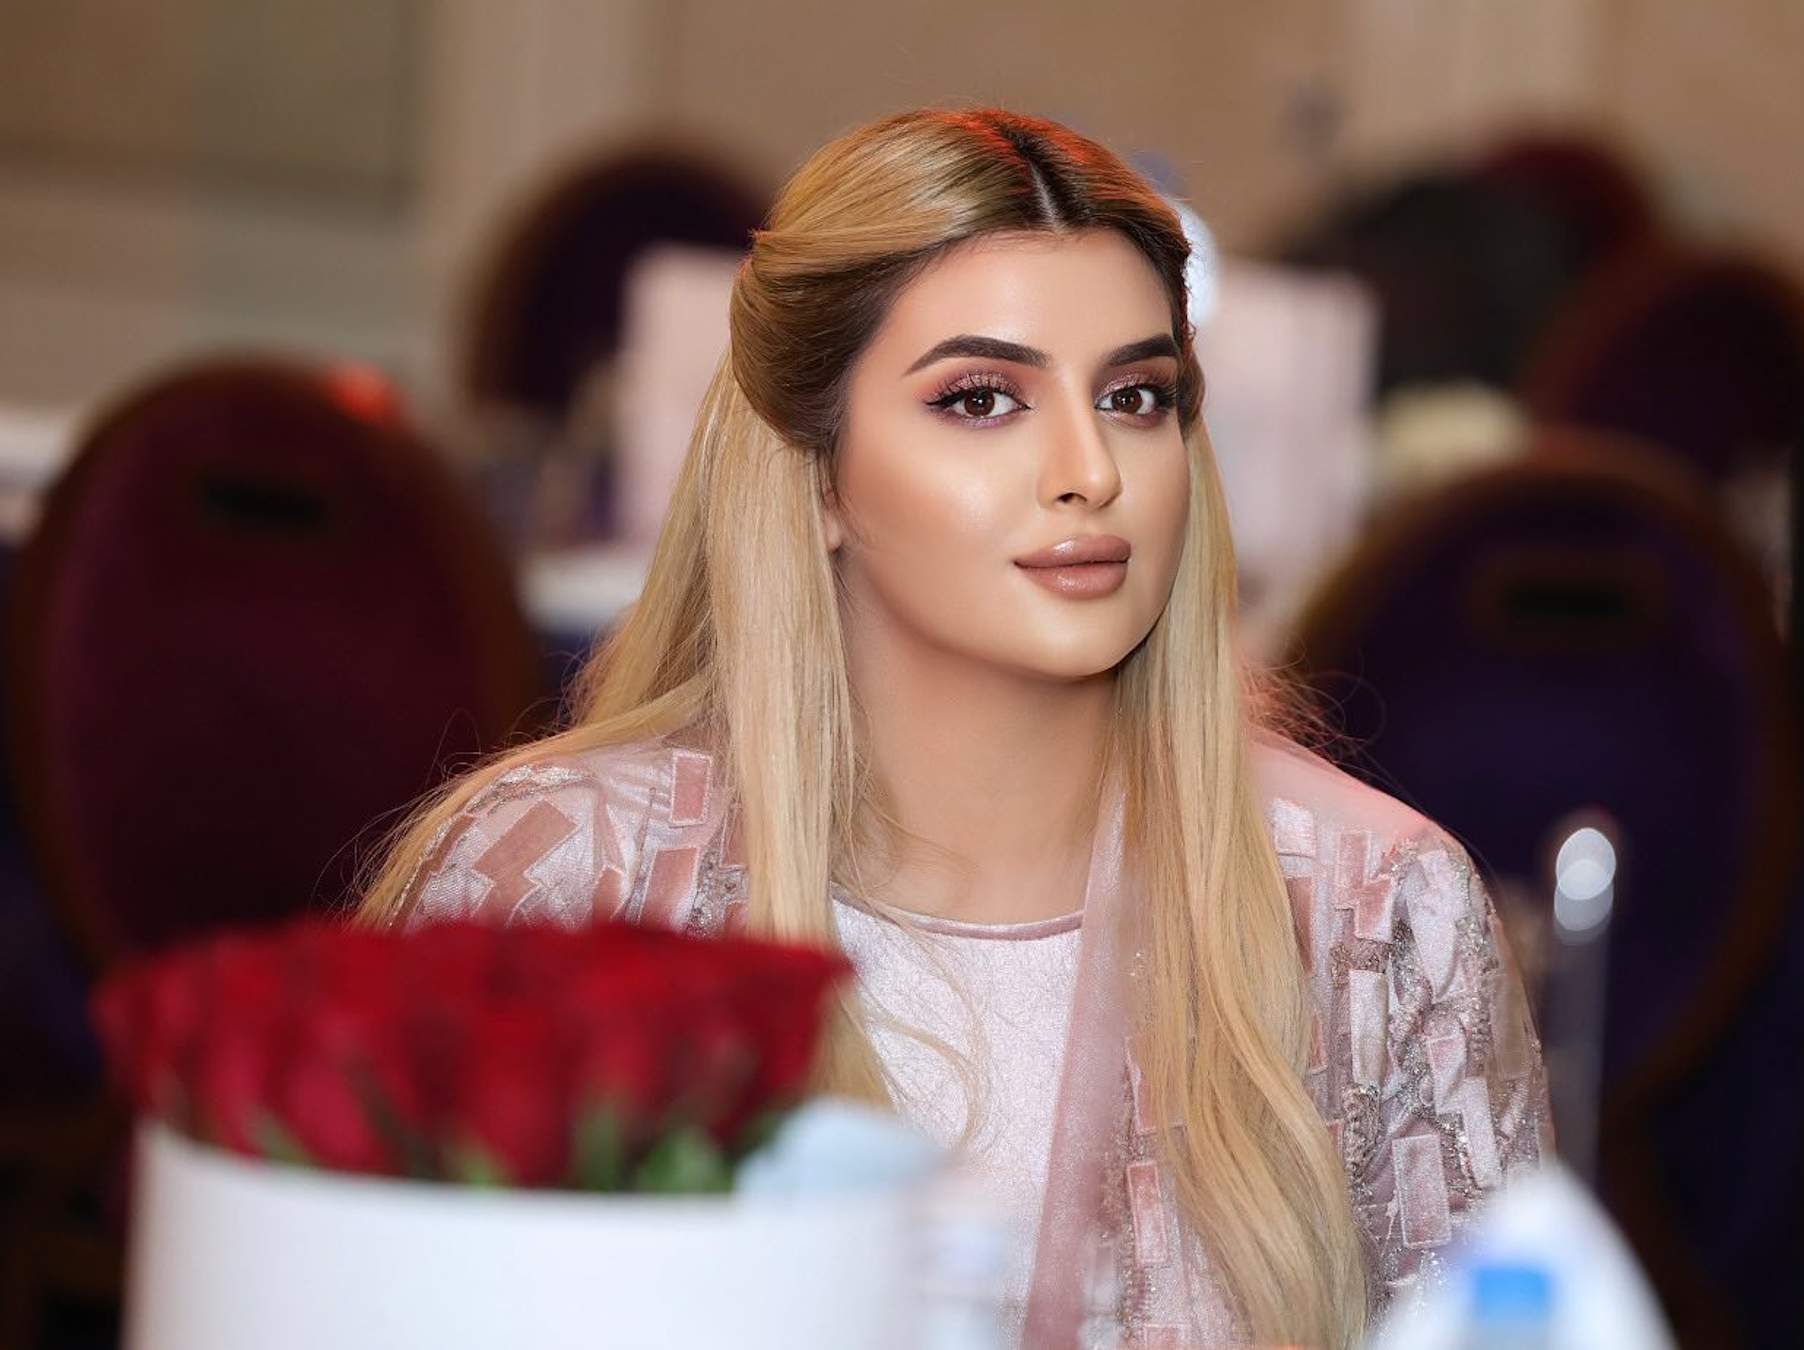 Escándalo en Dubái, la hija del emir se divorcia por Instagram, mensaje brutal